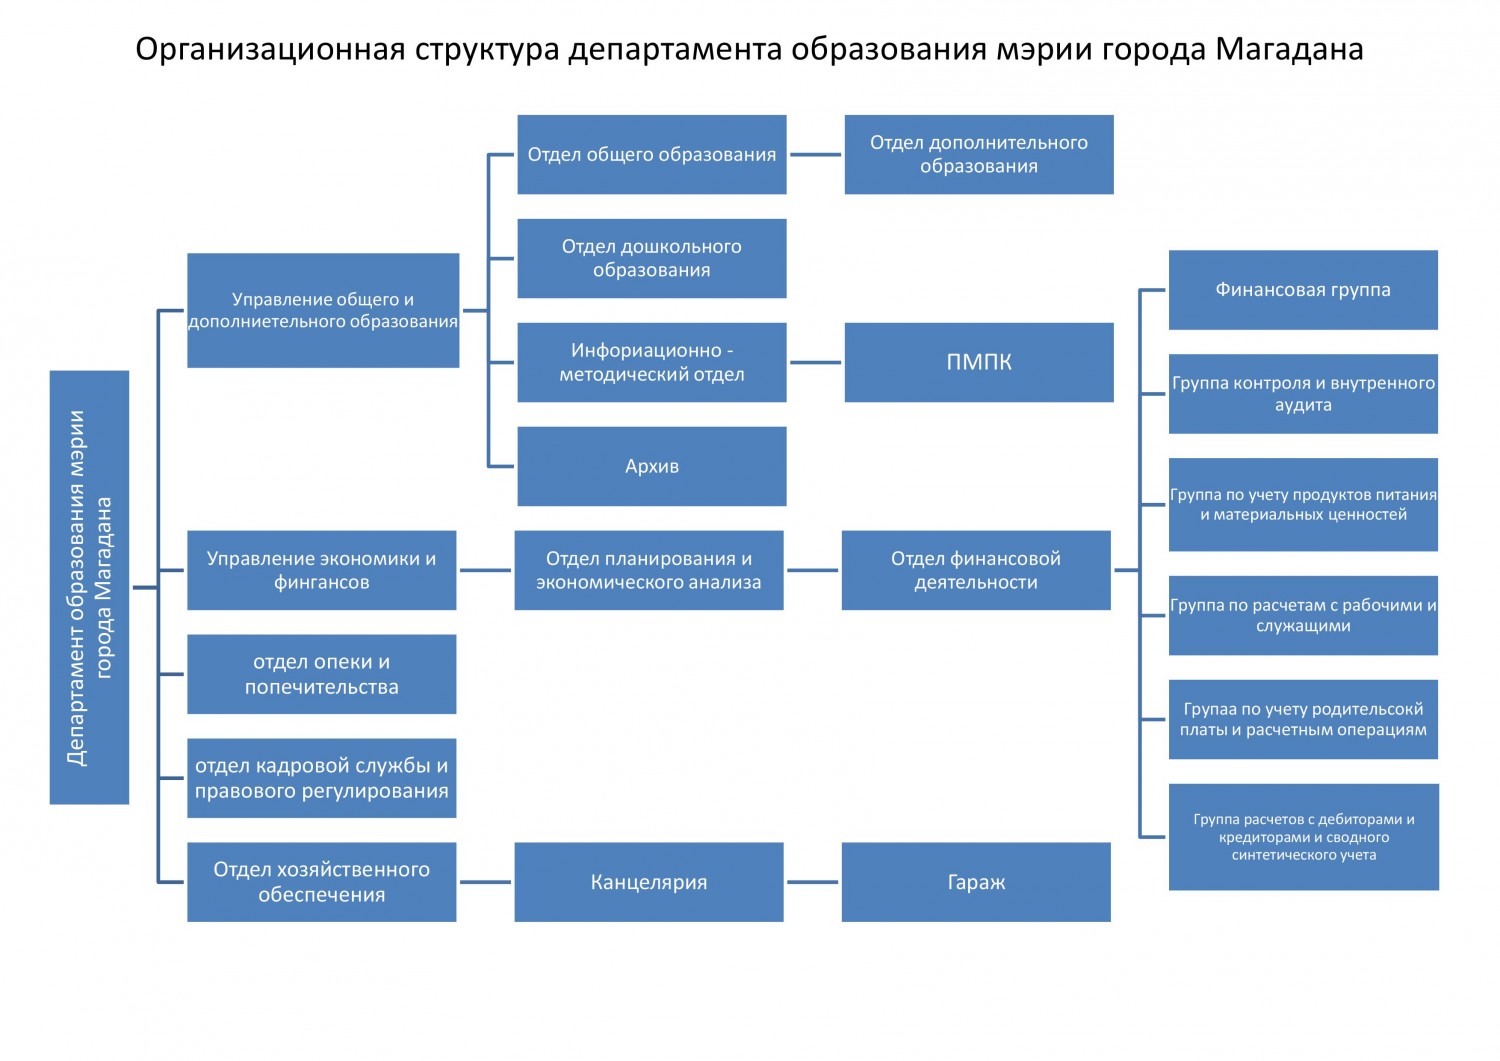 Изменения департаменте образования. Структура департамента образования Москвы. Структура мэрии города Магадана.